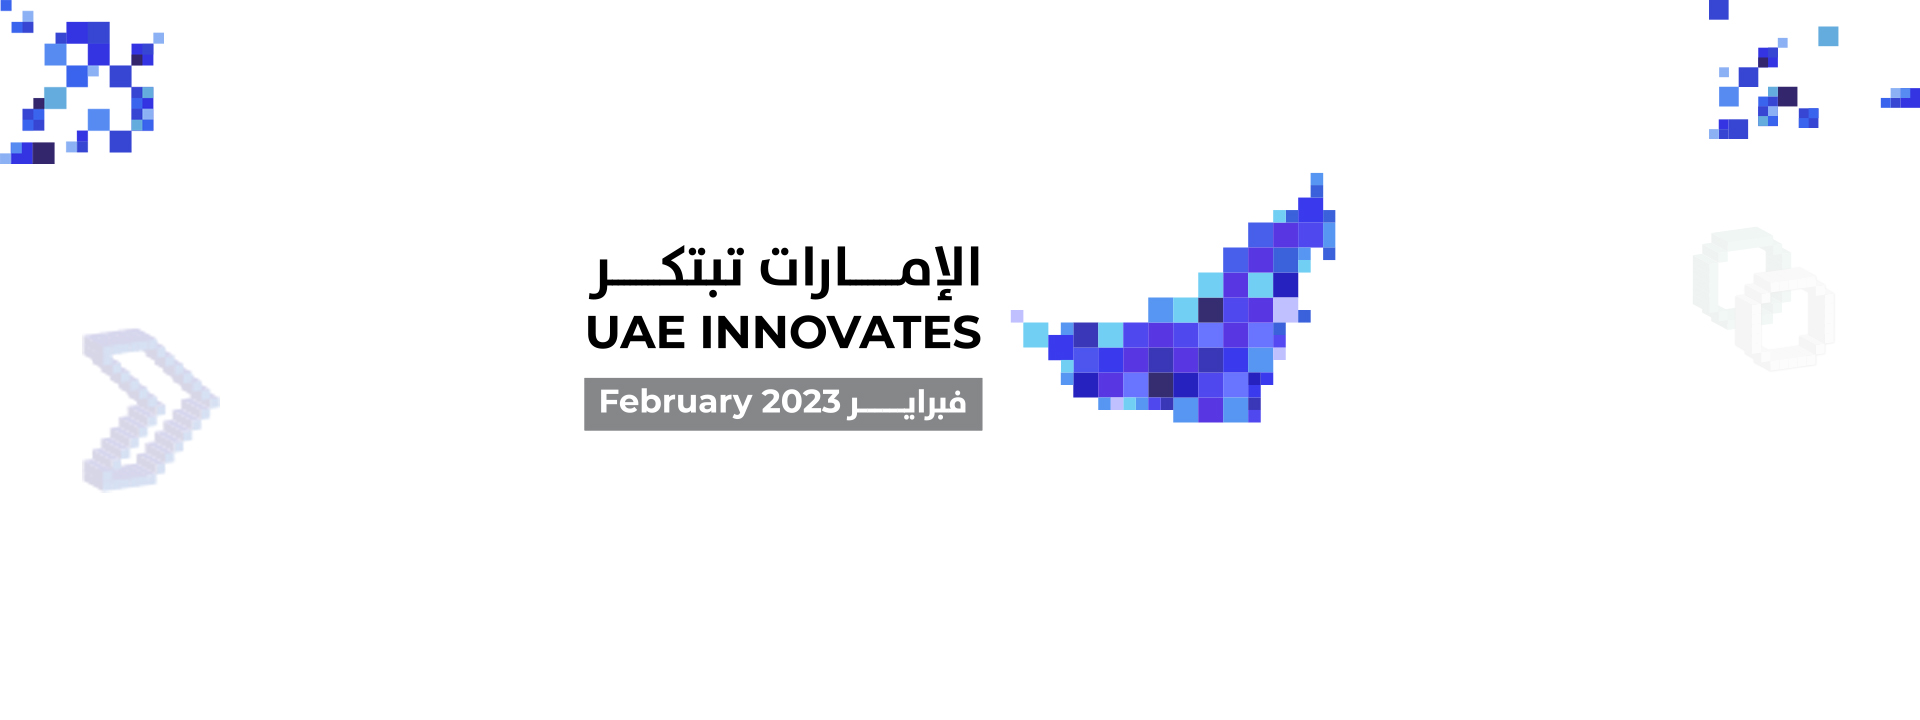 UAE INNOVATES 2023